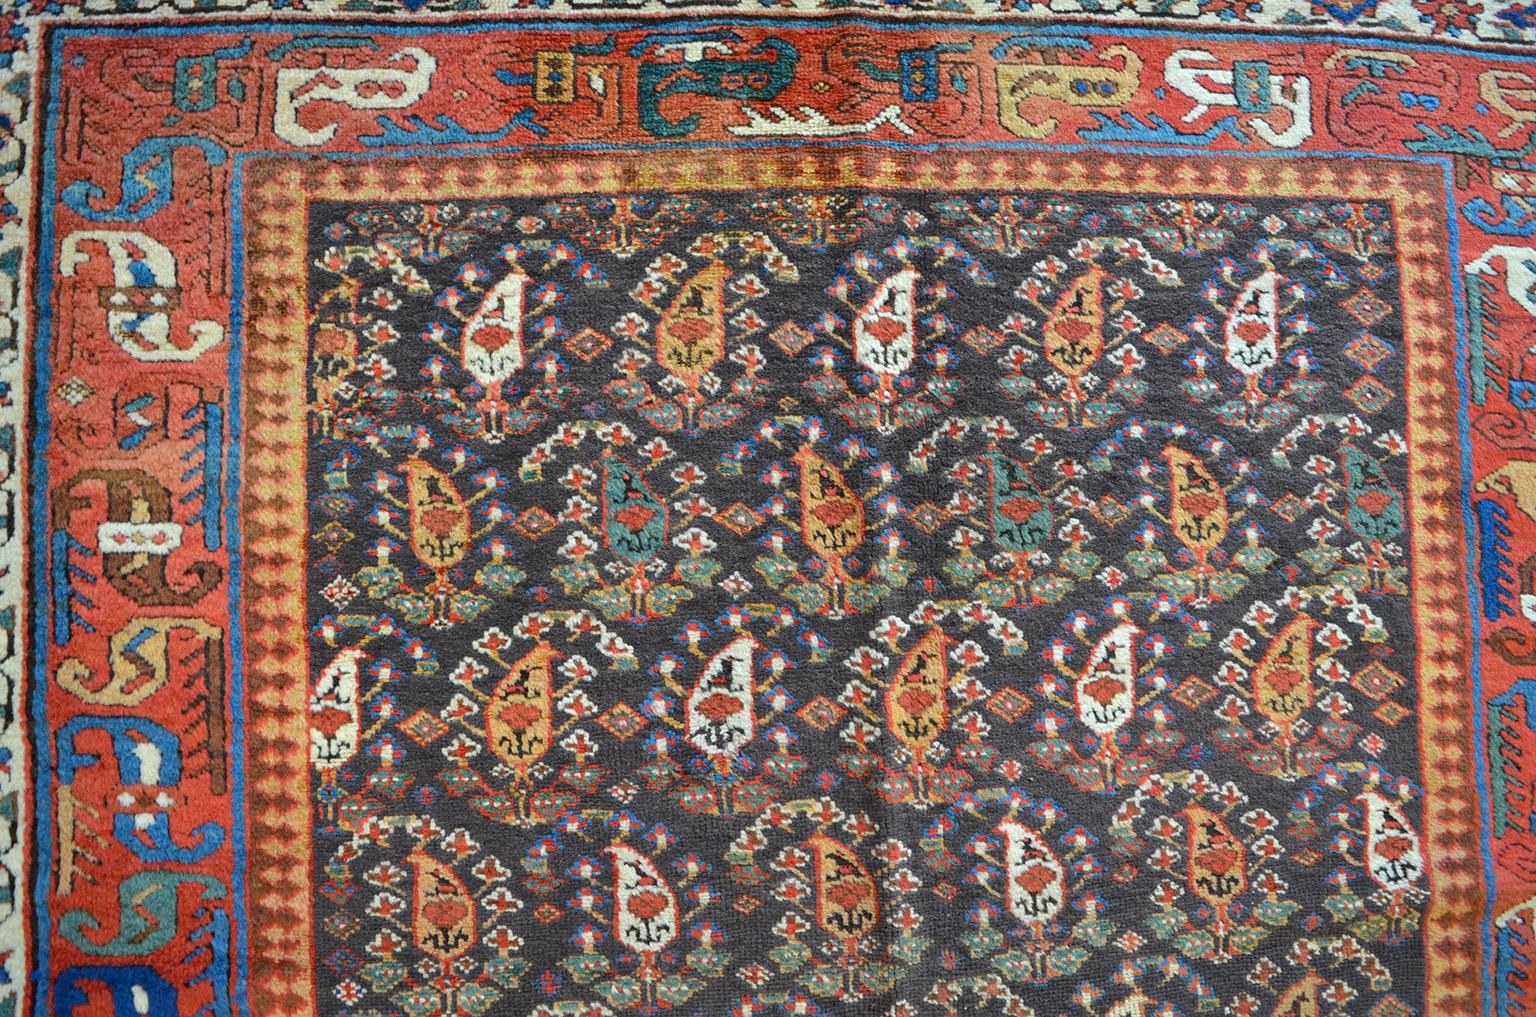 Cet ancien tapis persan du Karabagh, datant de 1870, en pure laine filée à la main, présente un motif cachemire ou 